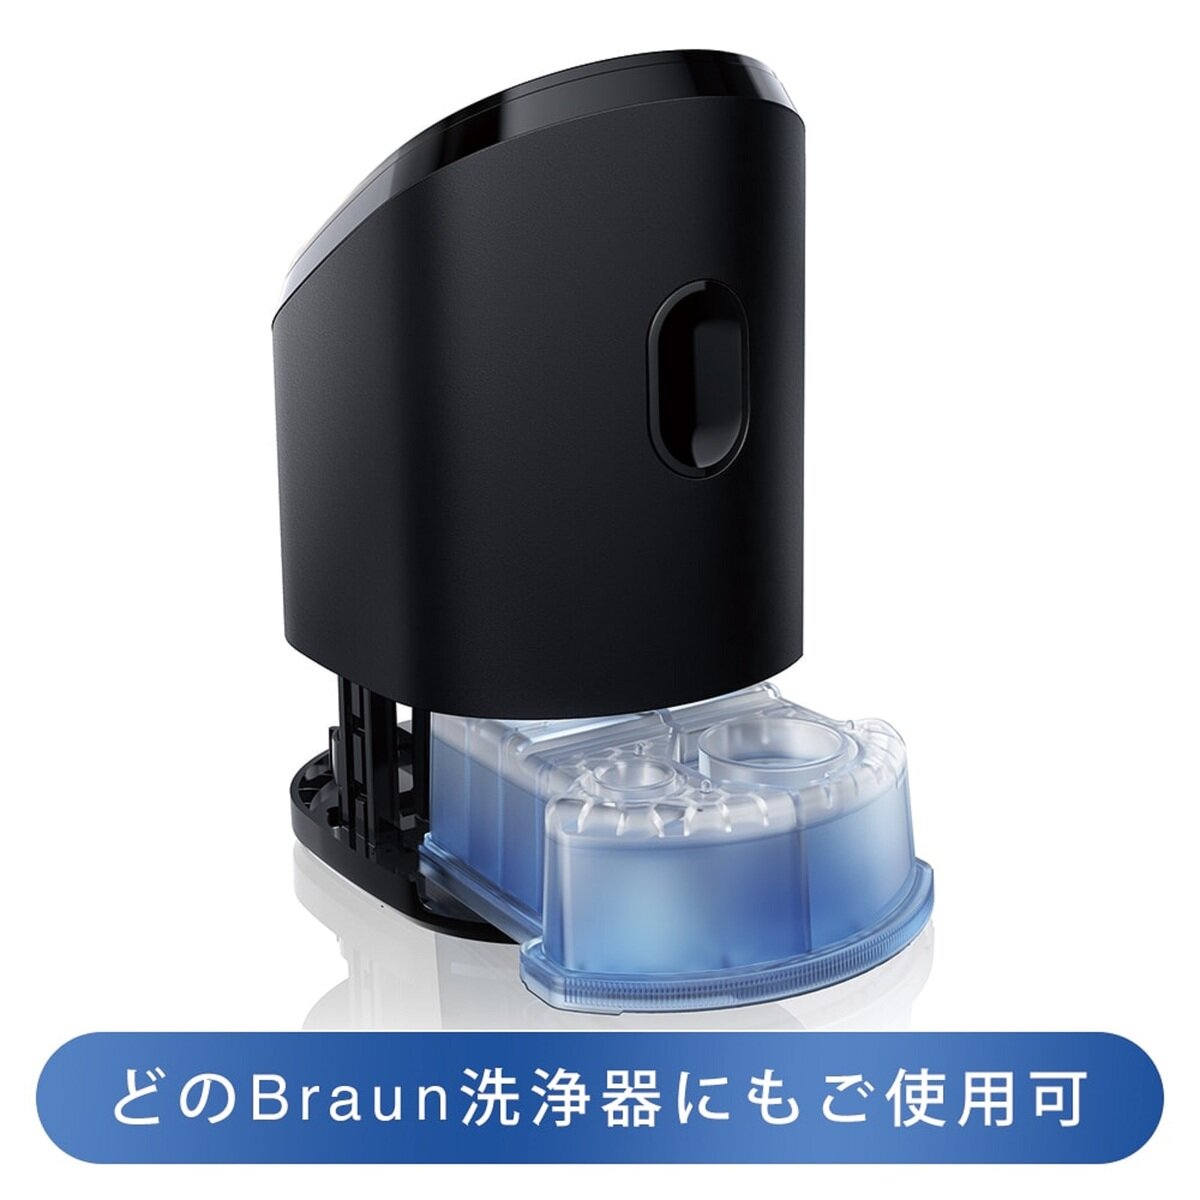 【新品未開封】ブラウン 洗浄液6個×4箱メンズシェーバー